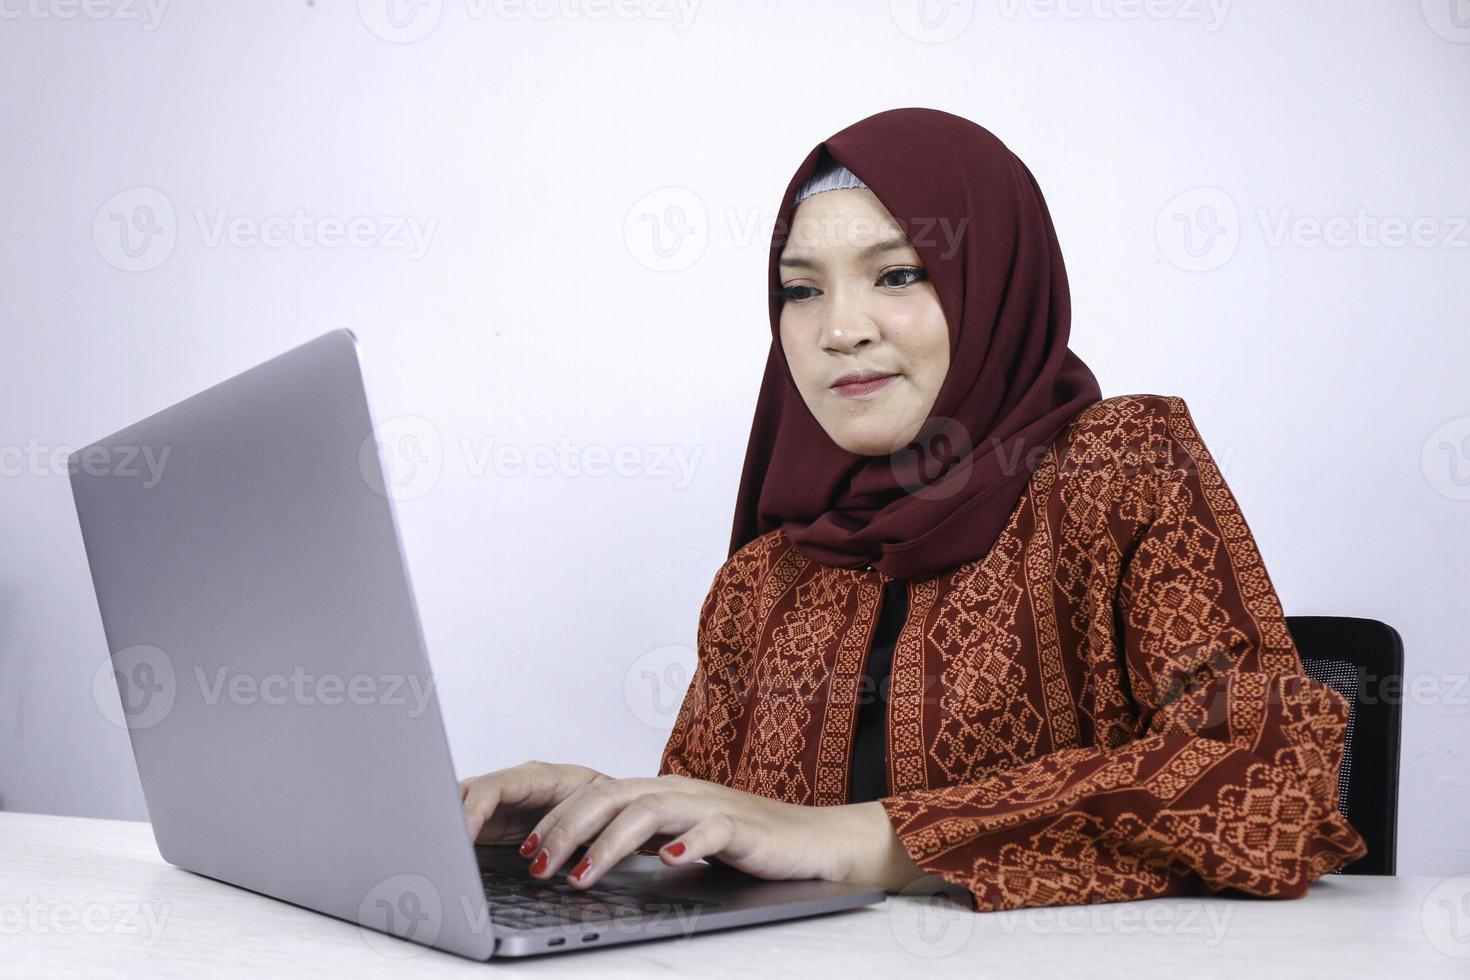 jovem mulher islâmica asiática é olhar sério com a mão do gesto de pensamento no rosto na frente do laptop. foto